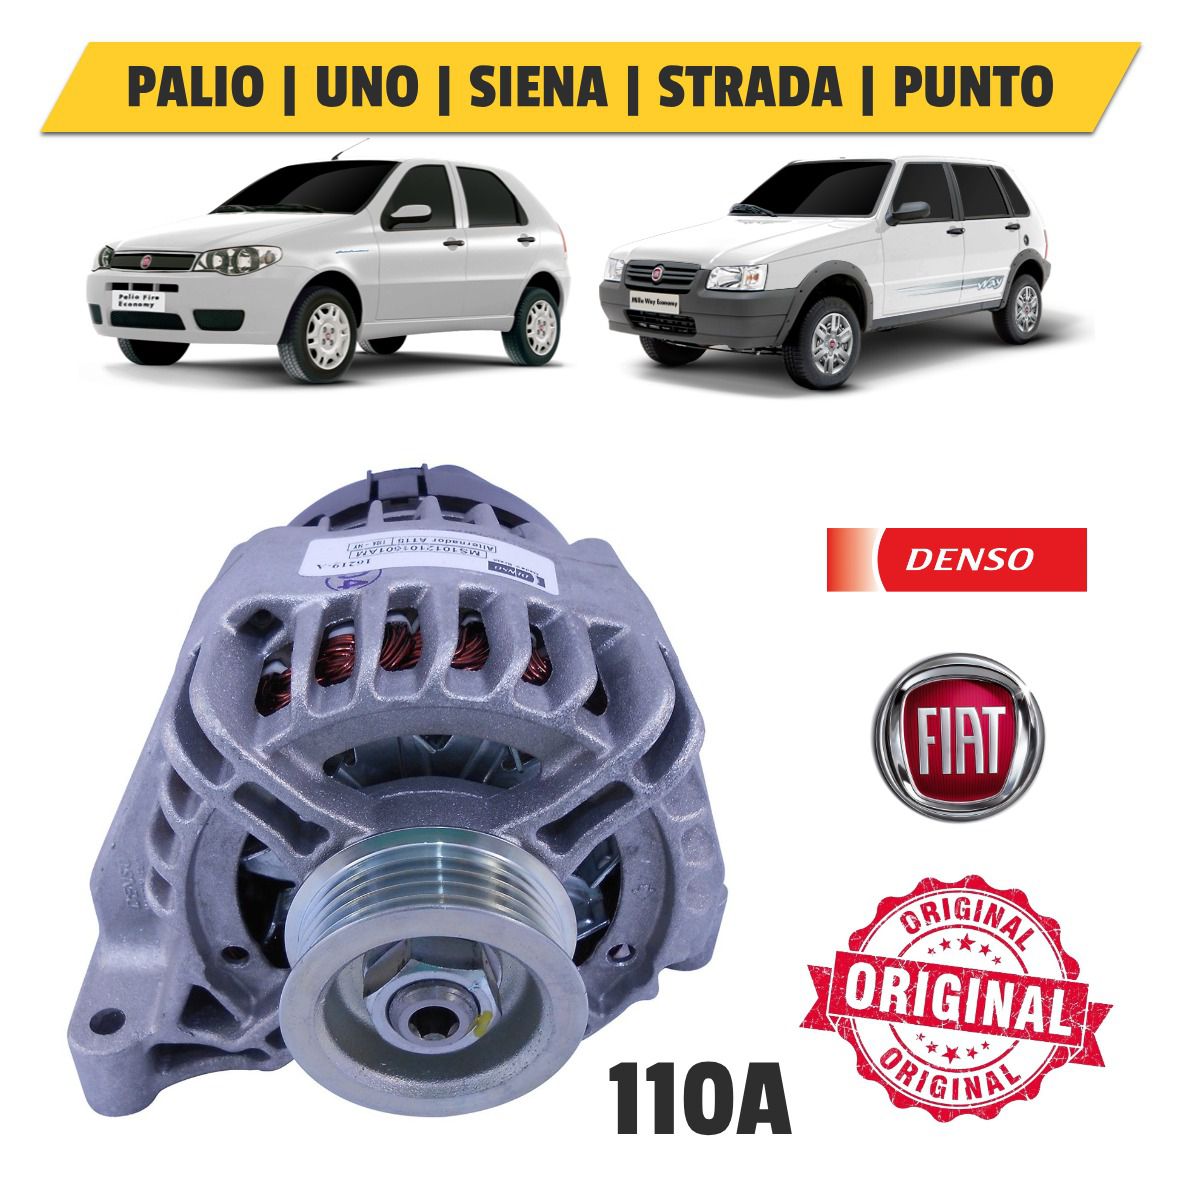 Alternador Fiat Motor Fire 1.0 / 1.4 110A com Ar Condicionado - Denso